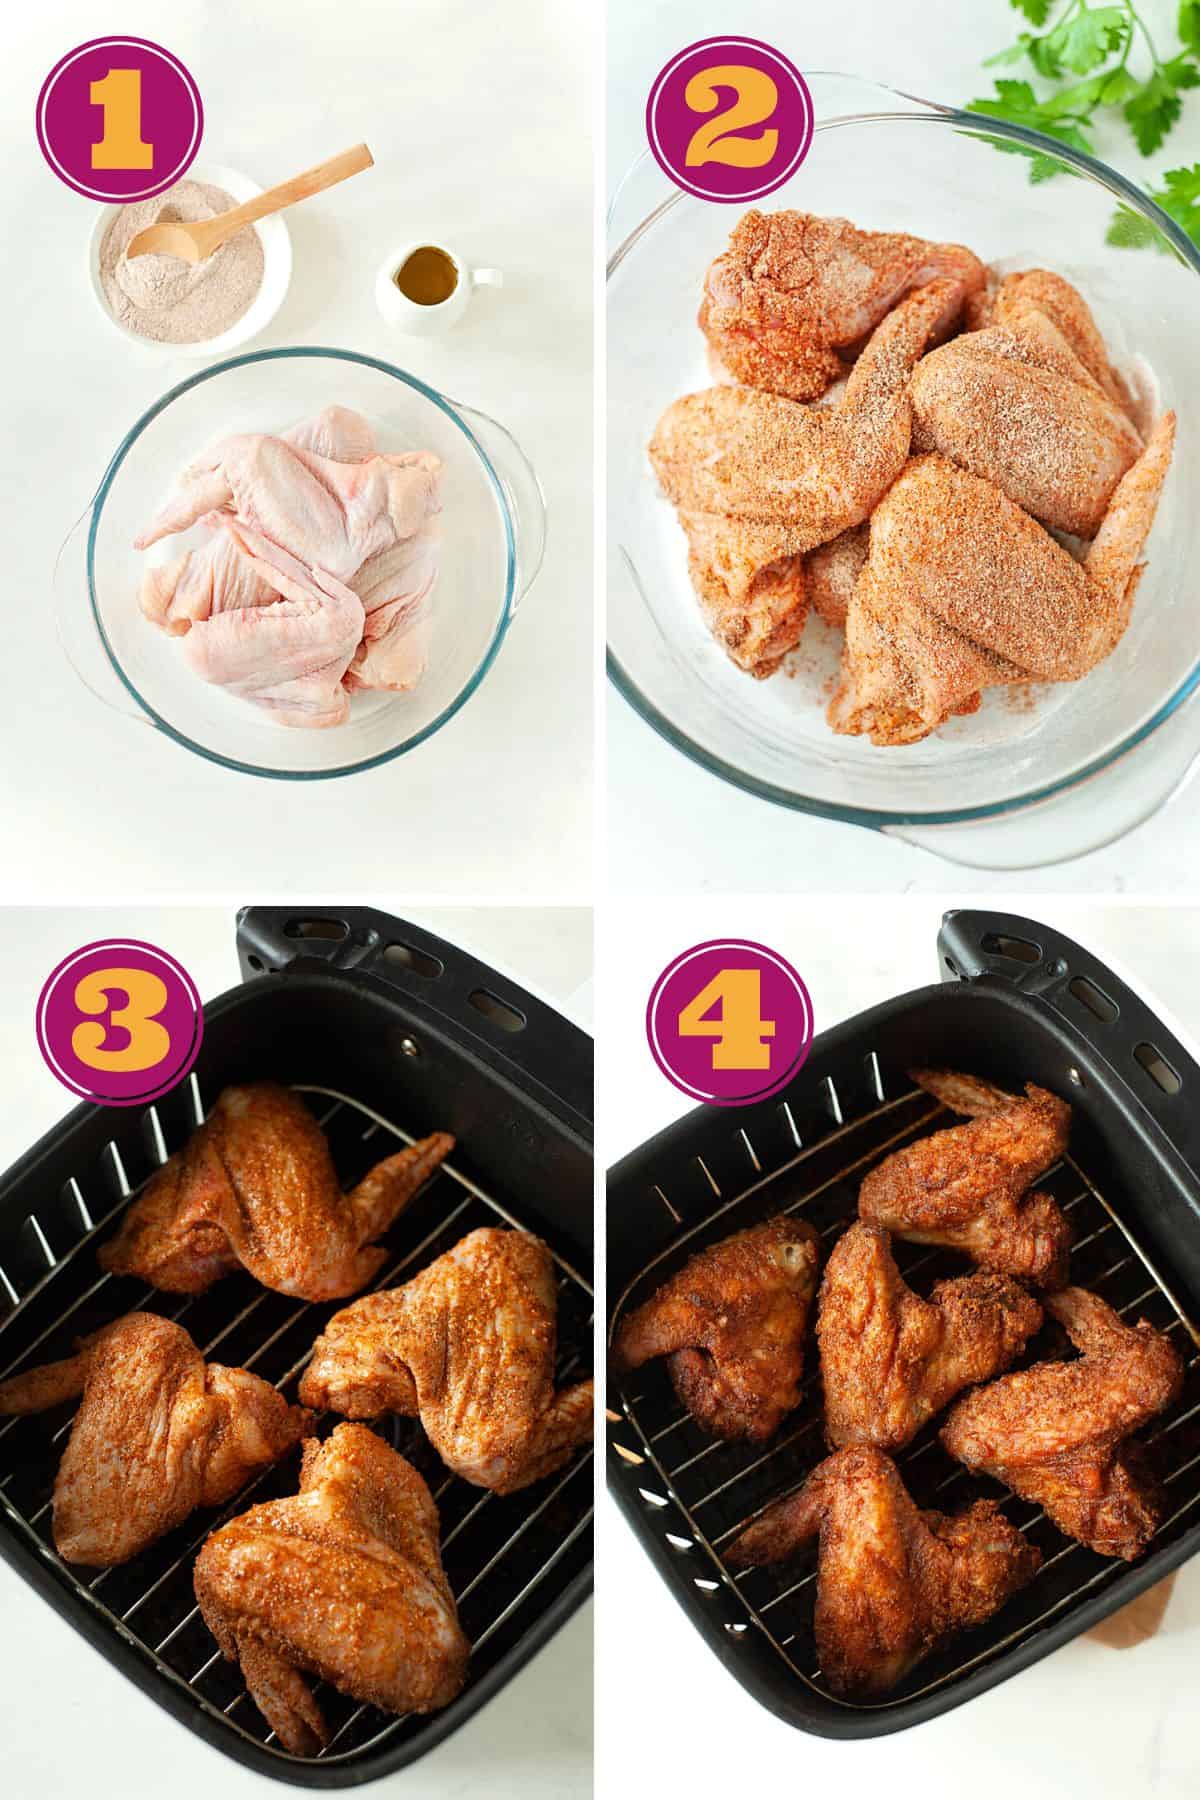 steps to make air fryer chicken wings in the Ninja Foodi